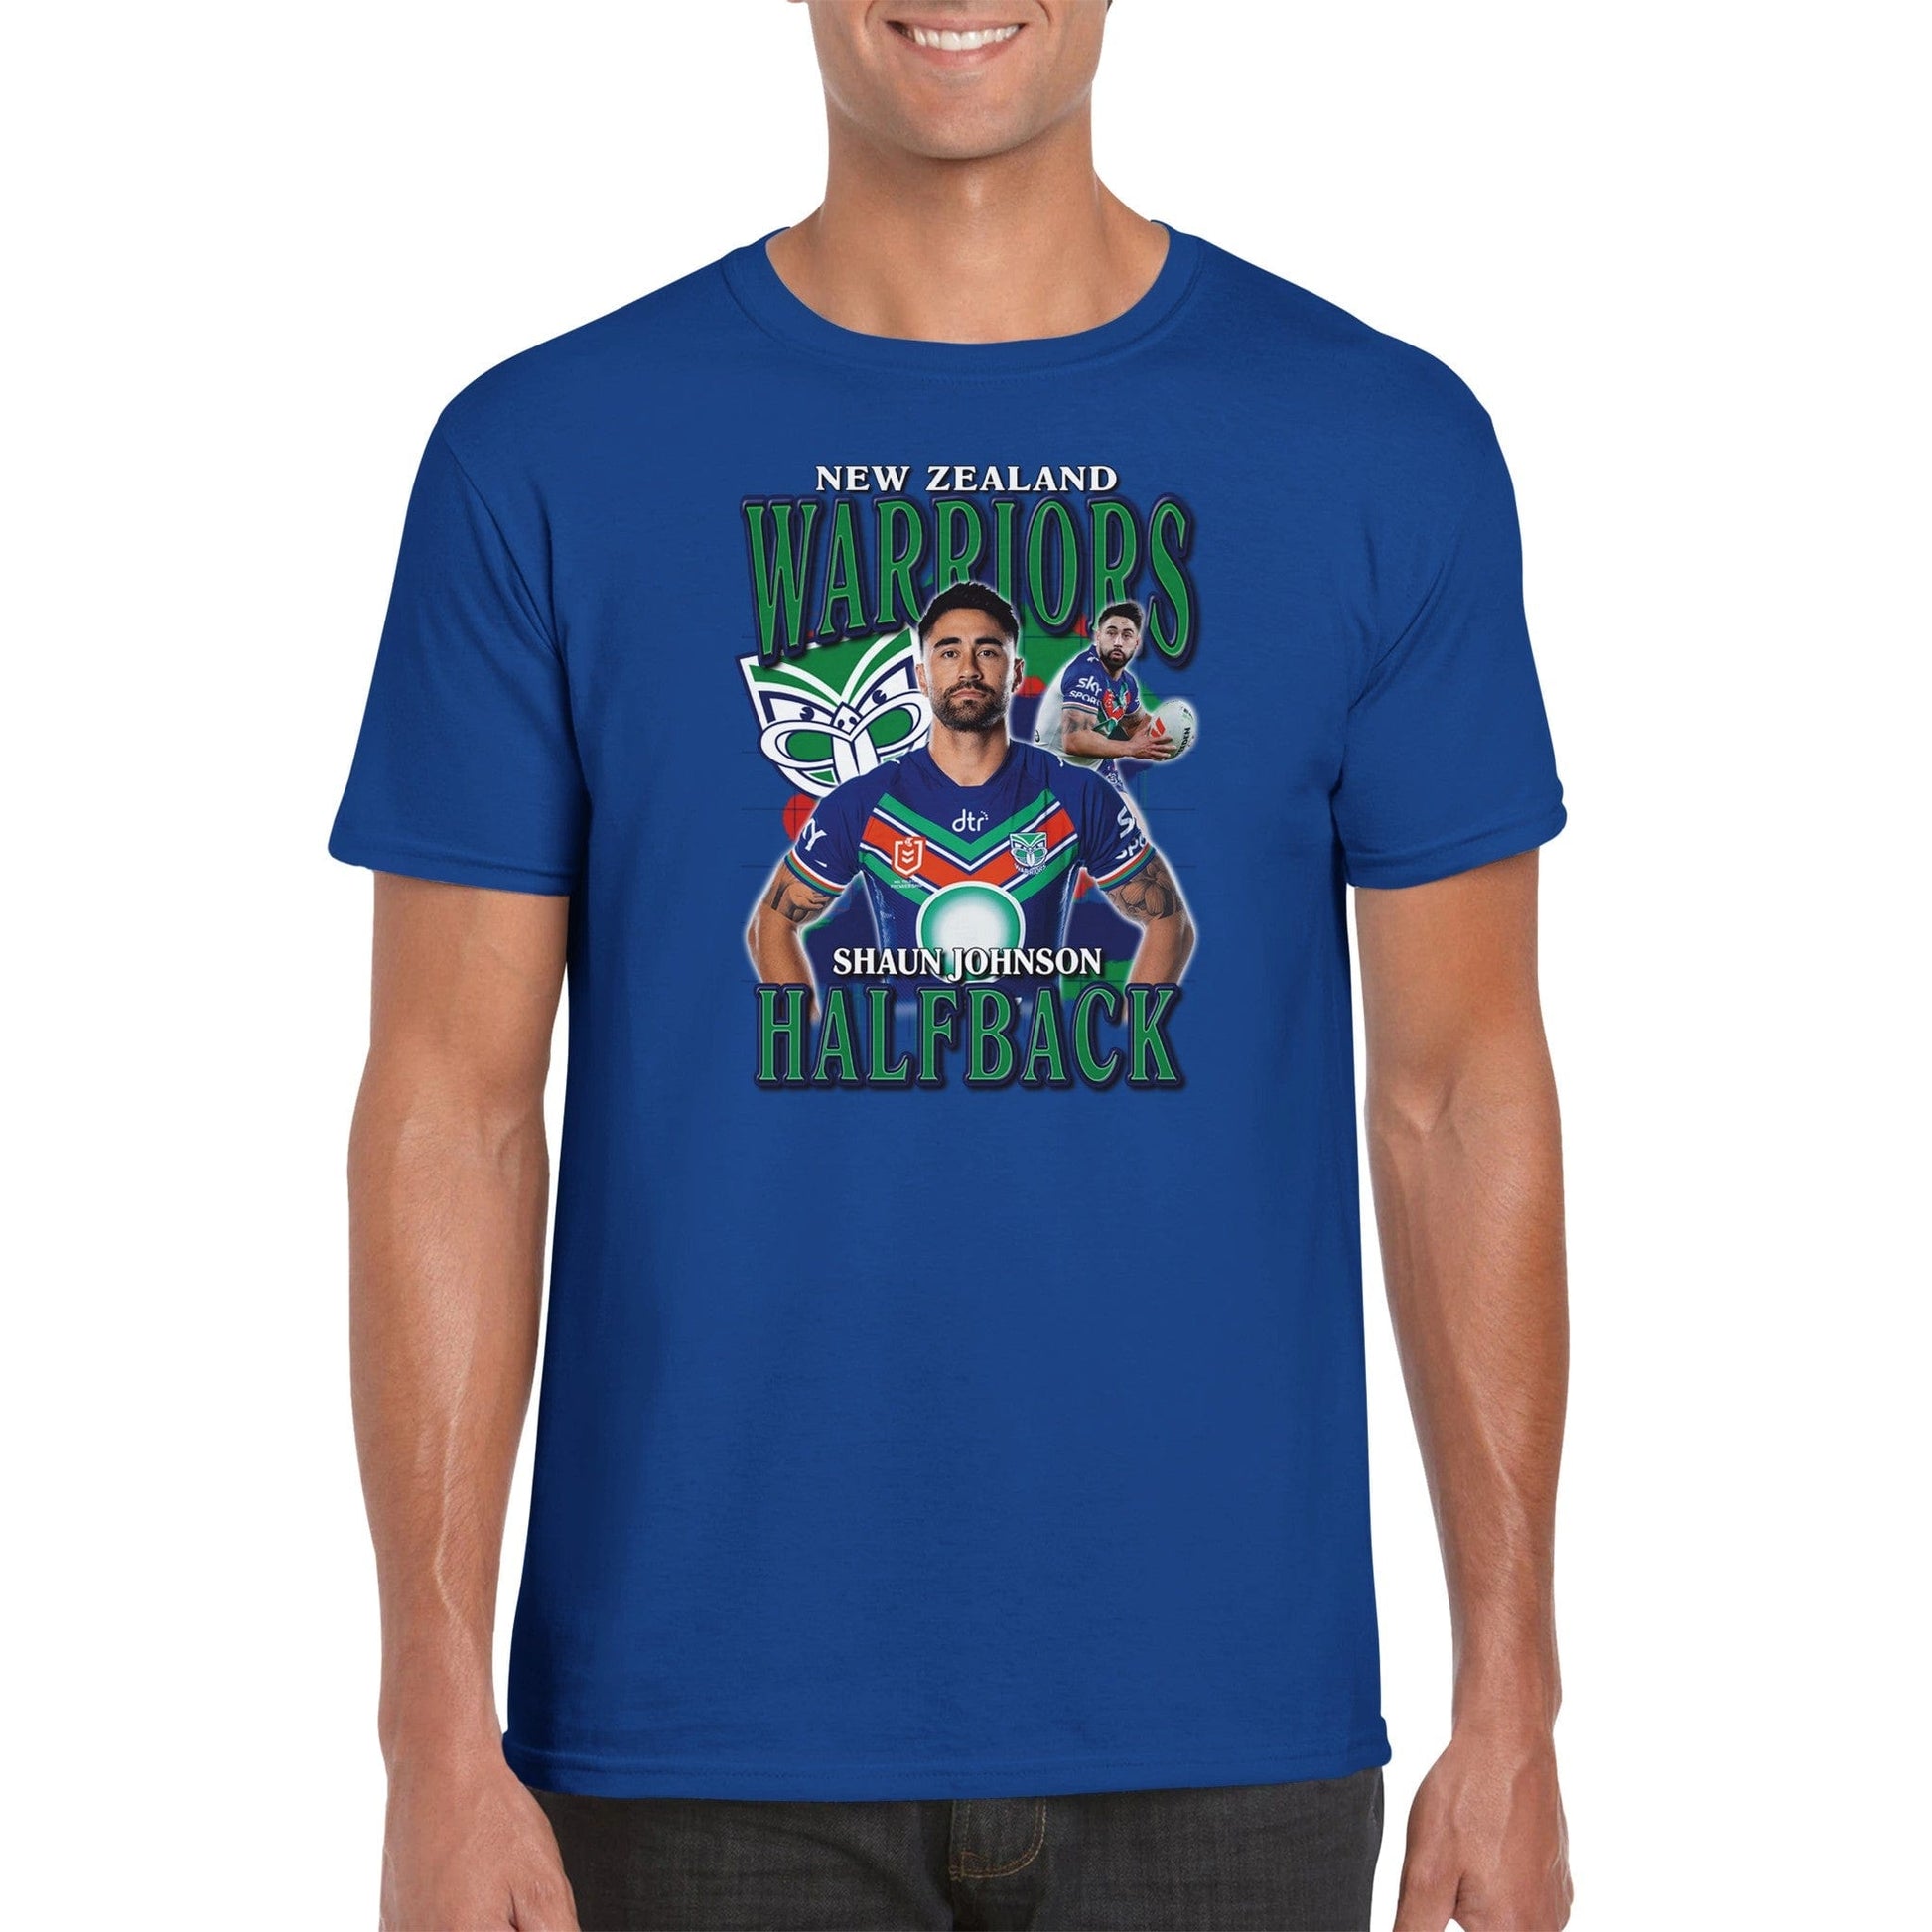 Shaun Johnson NZ Warriors T-shirt Australia Online Color